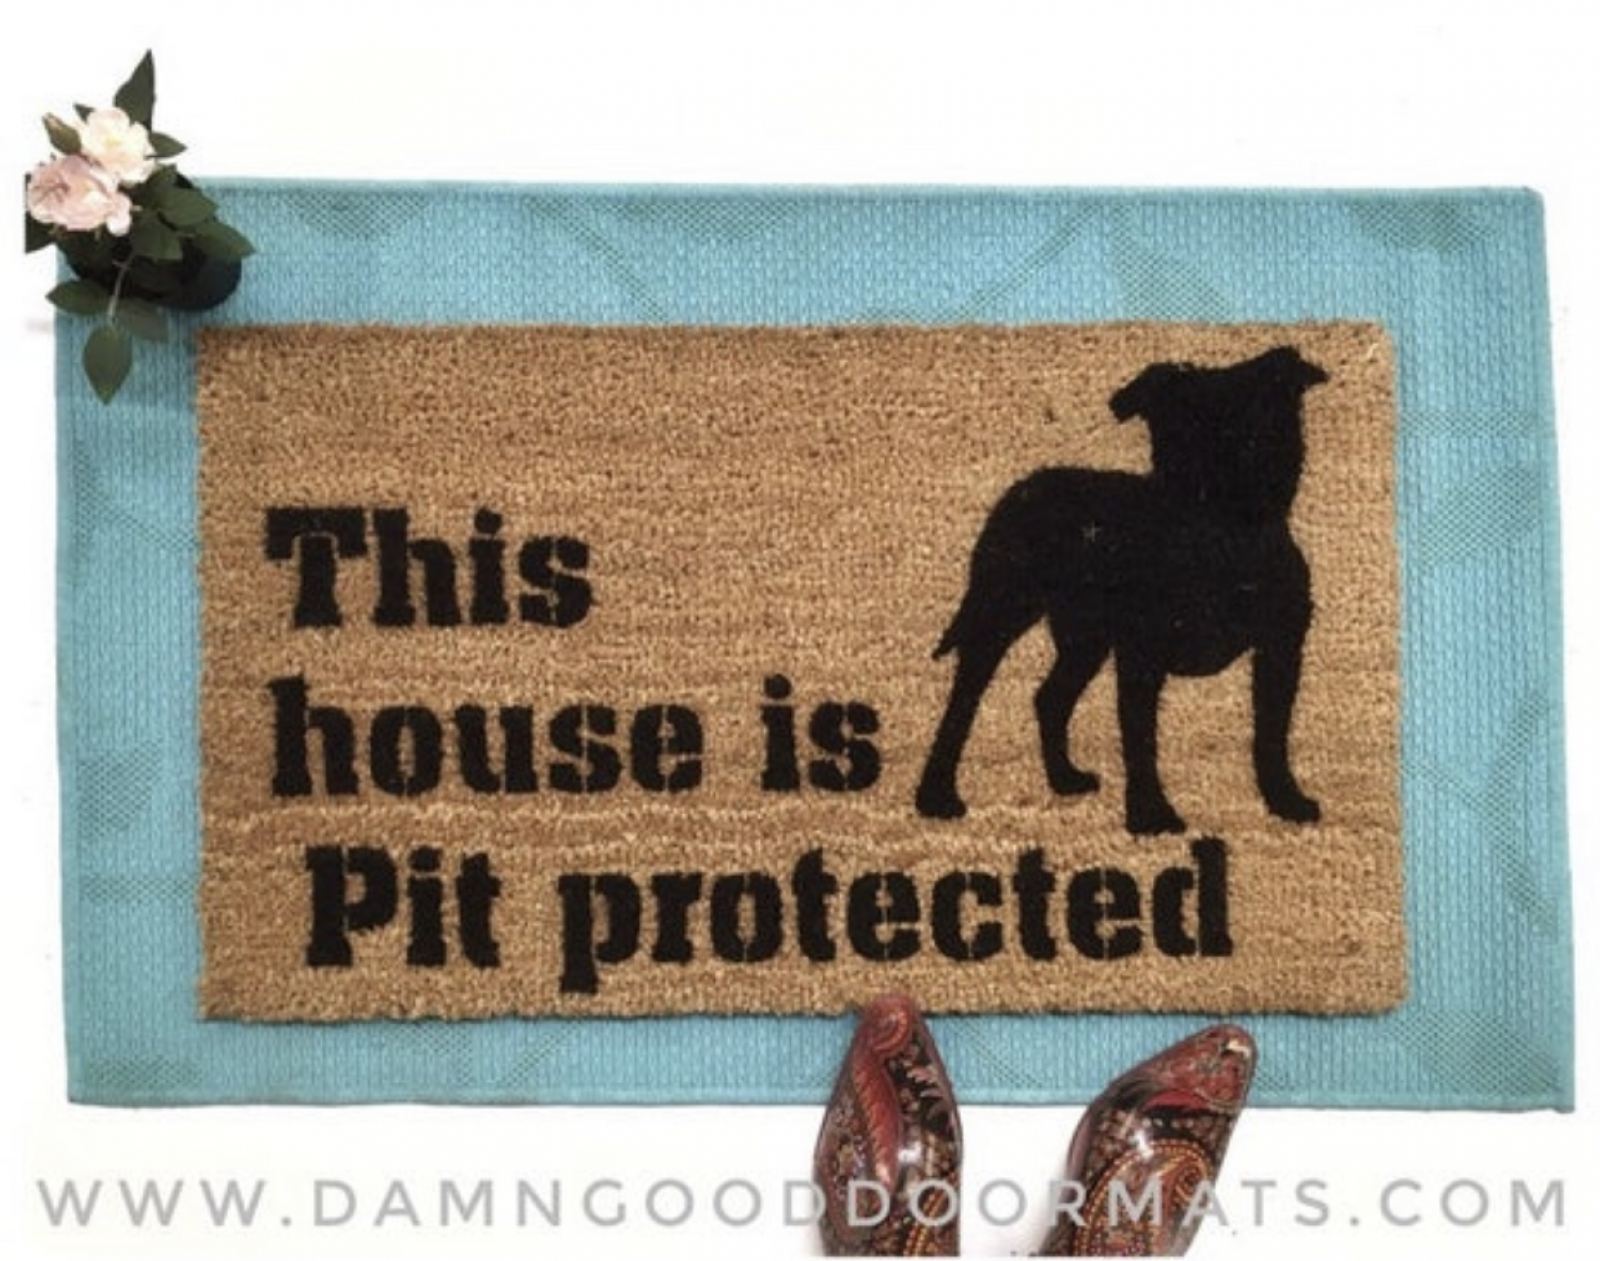 Pitbull Pit Bull Dog & Gun Make My Day Welcome Home Doormat Door Floor Mat Rug 